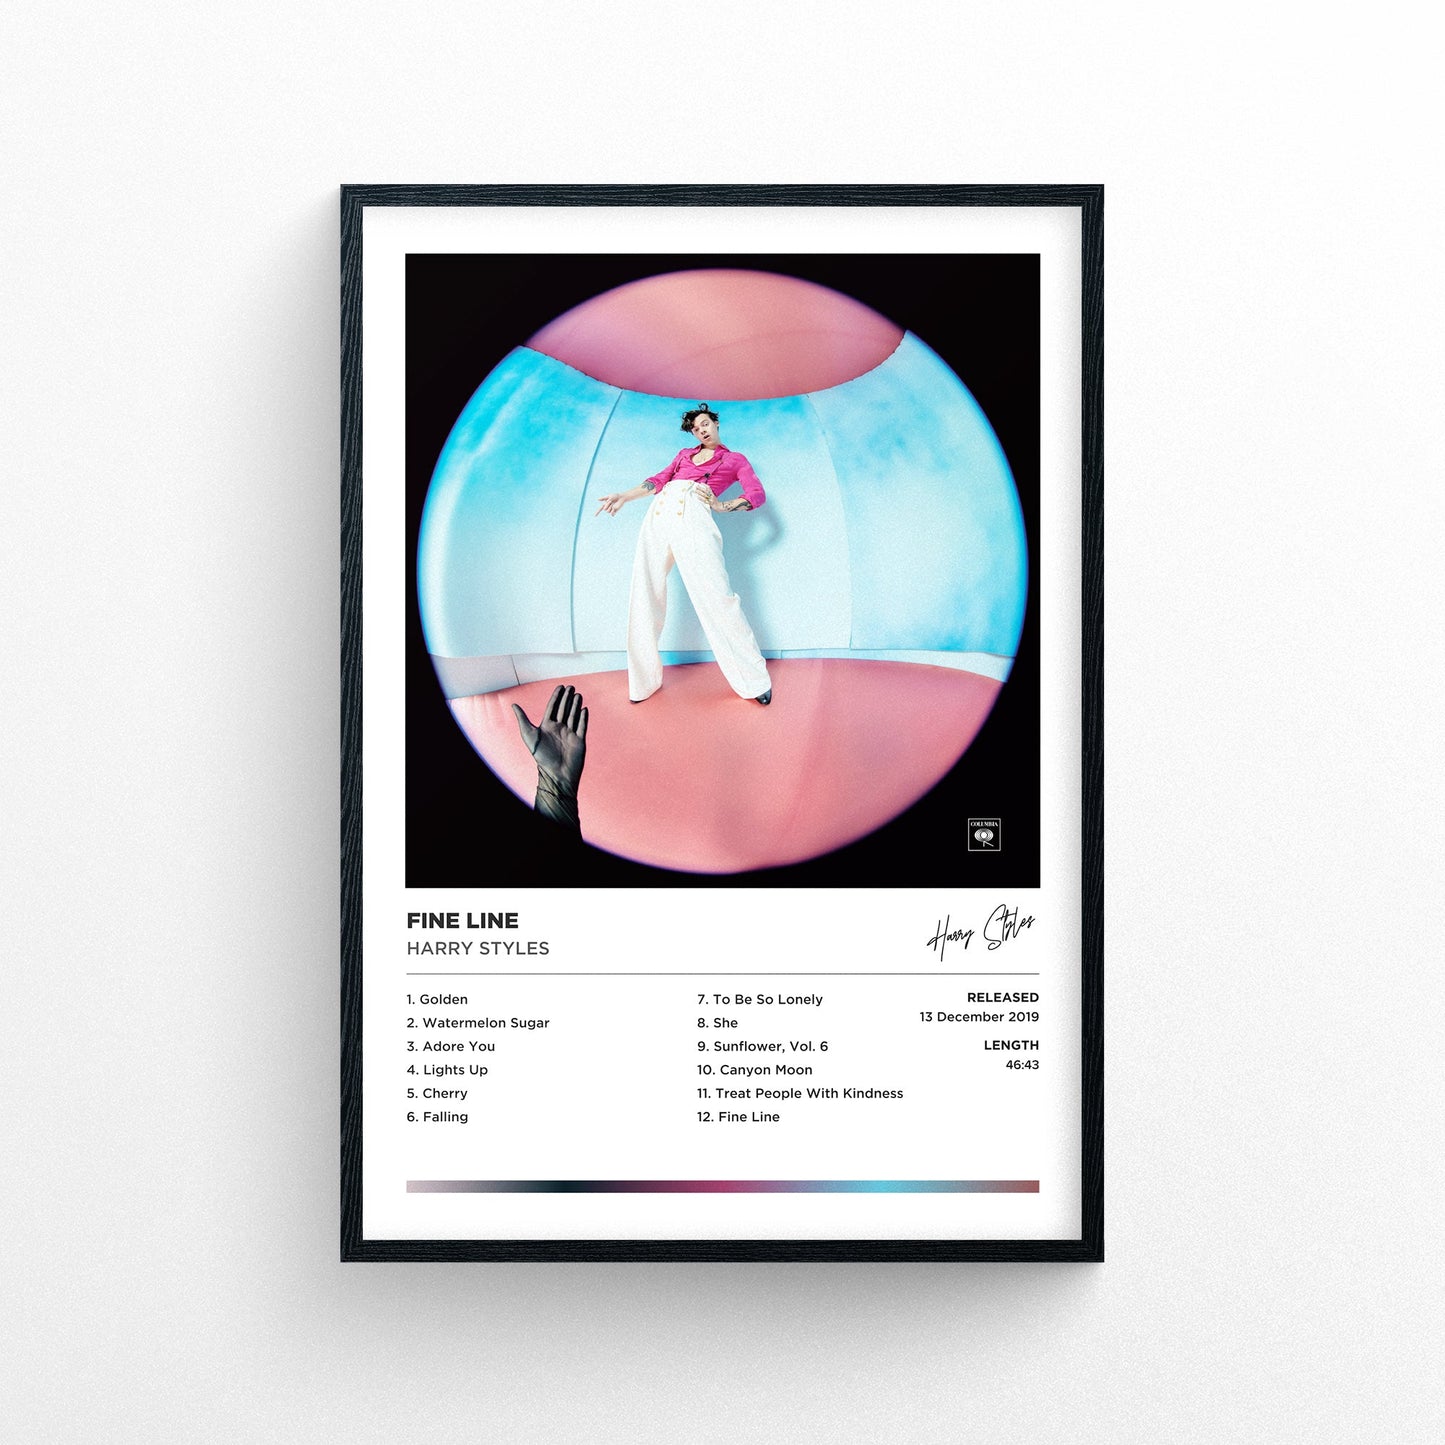 Harry Styles - Fine Line Framed Poster Print | Polaroid Style | Album Cover Artwork